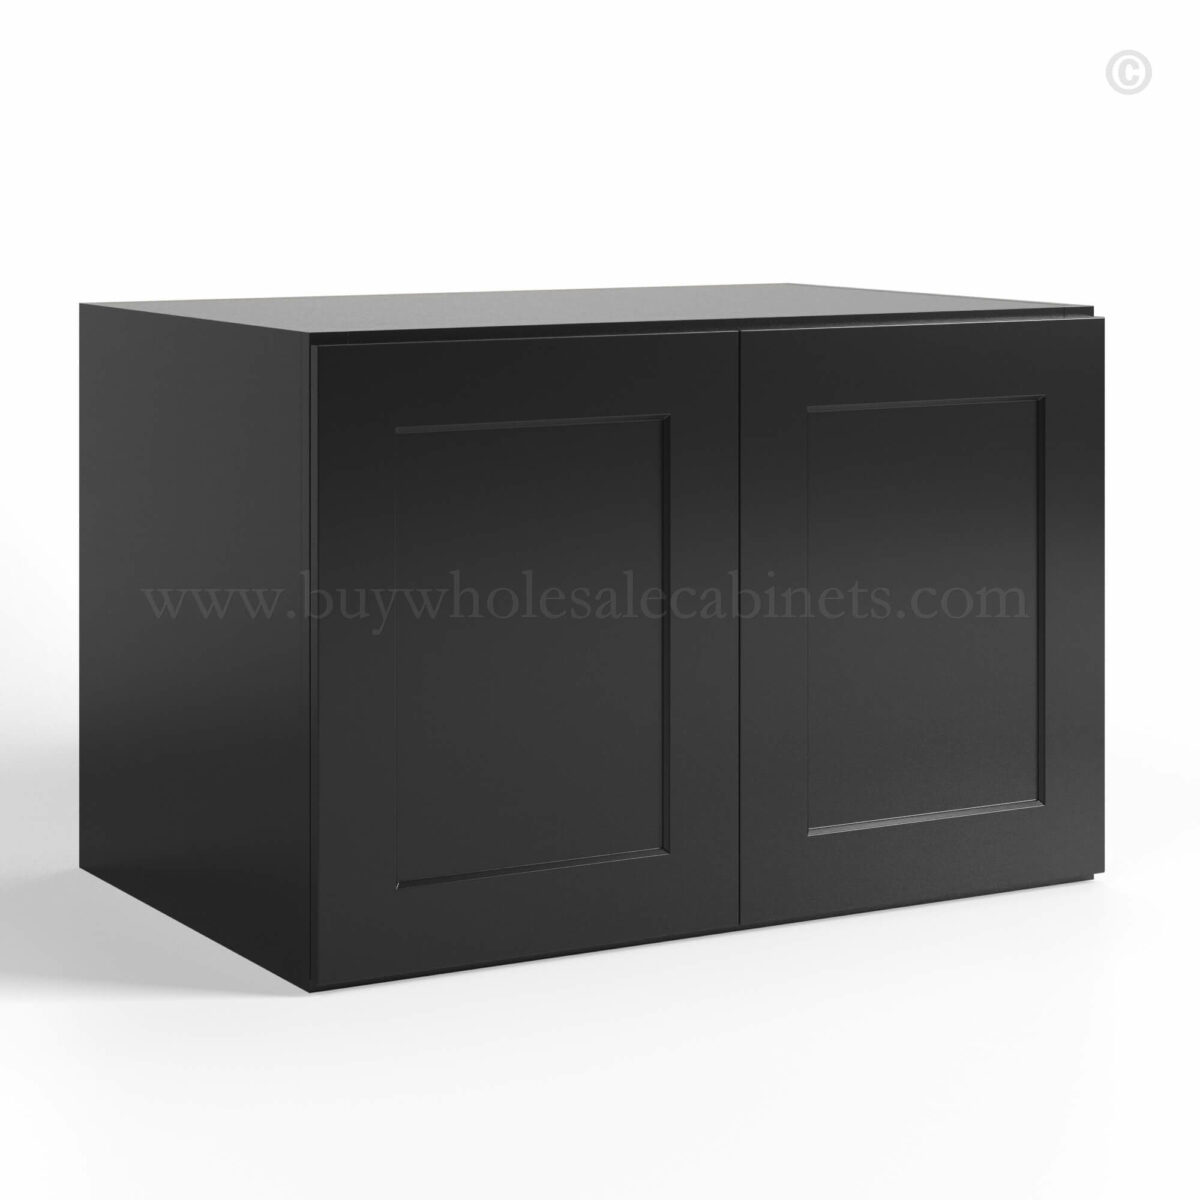 Black Shaker Double Door Wall Cabinets